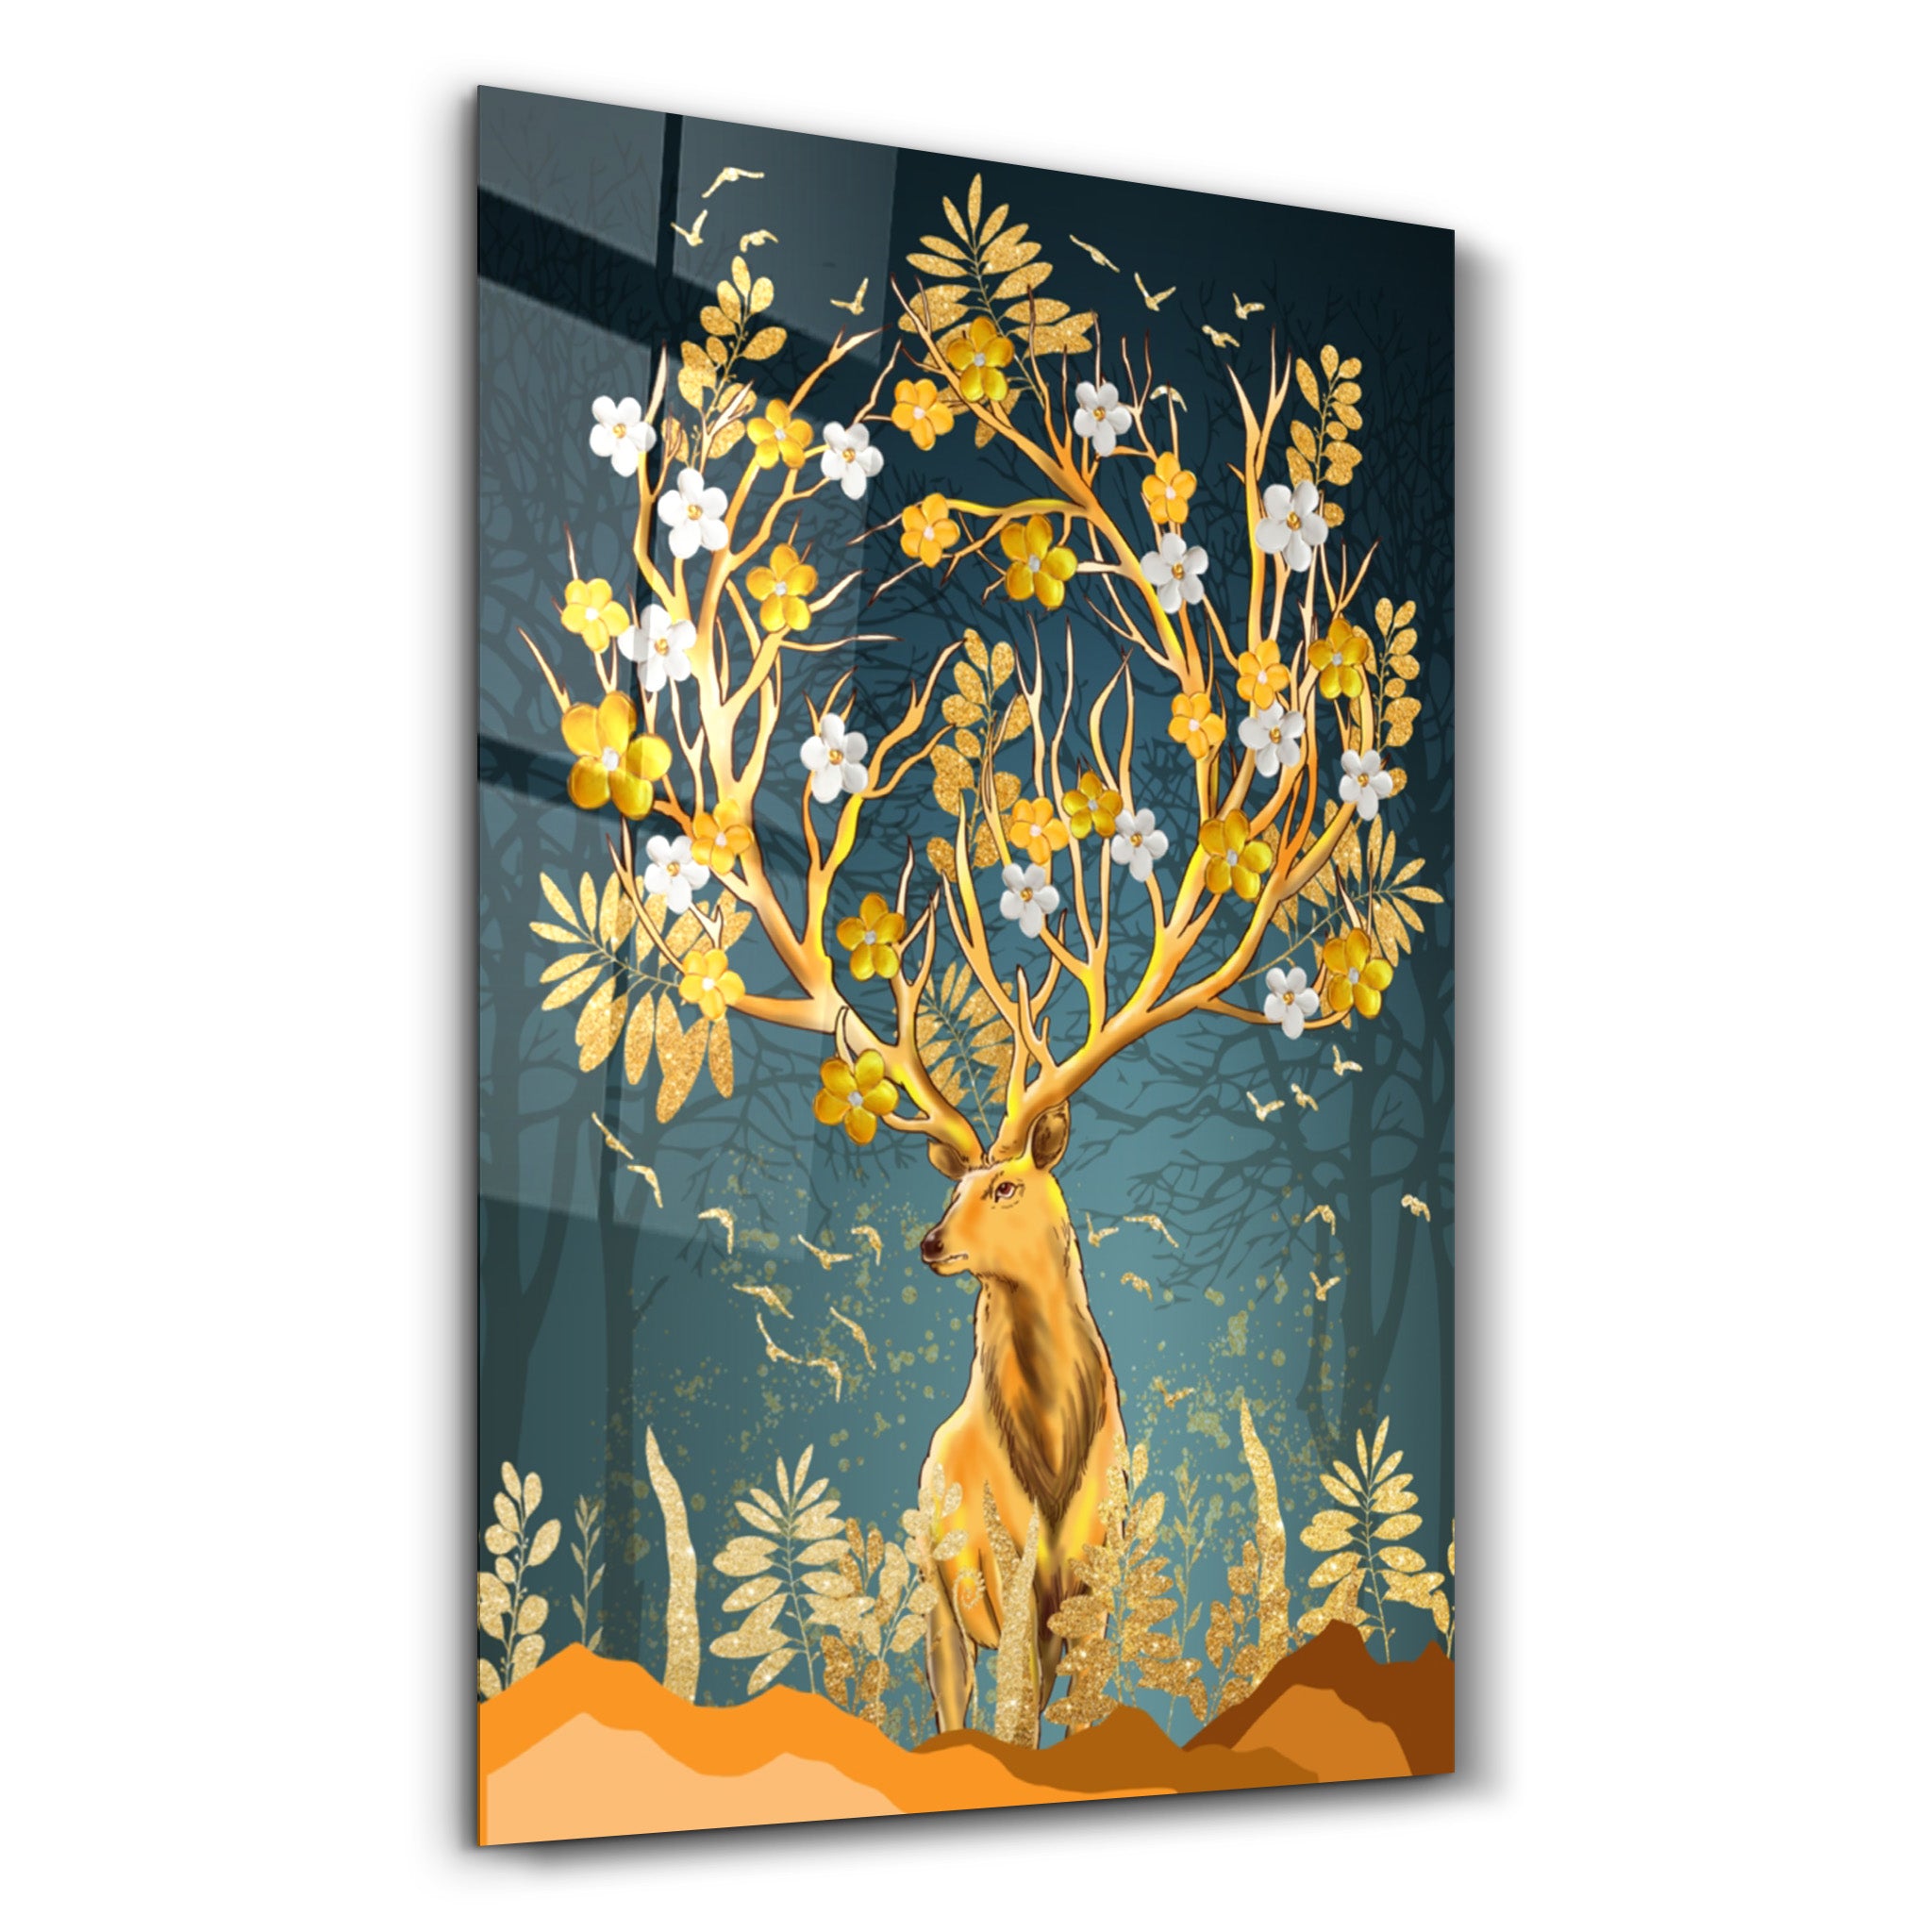 ・"Abstract Deer & Flowers"・Glass Wall Art - ArtDesigna Glass Printing Wall Art